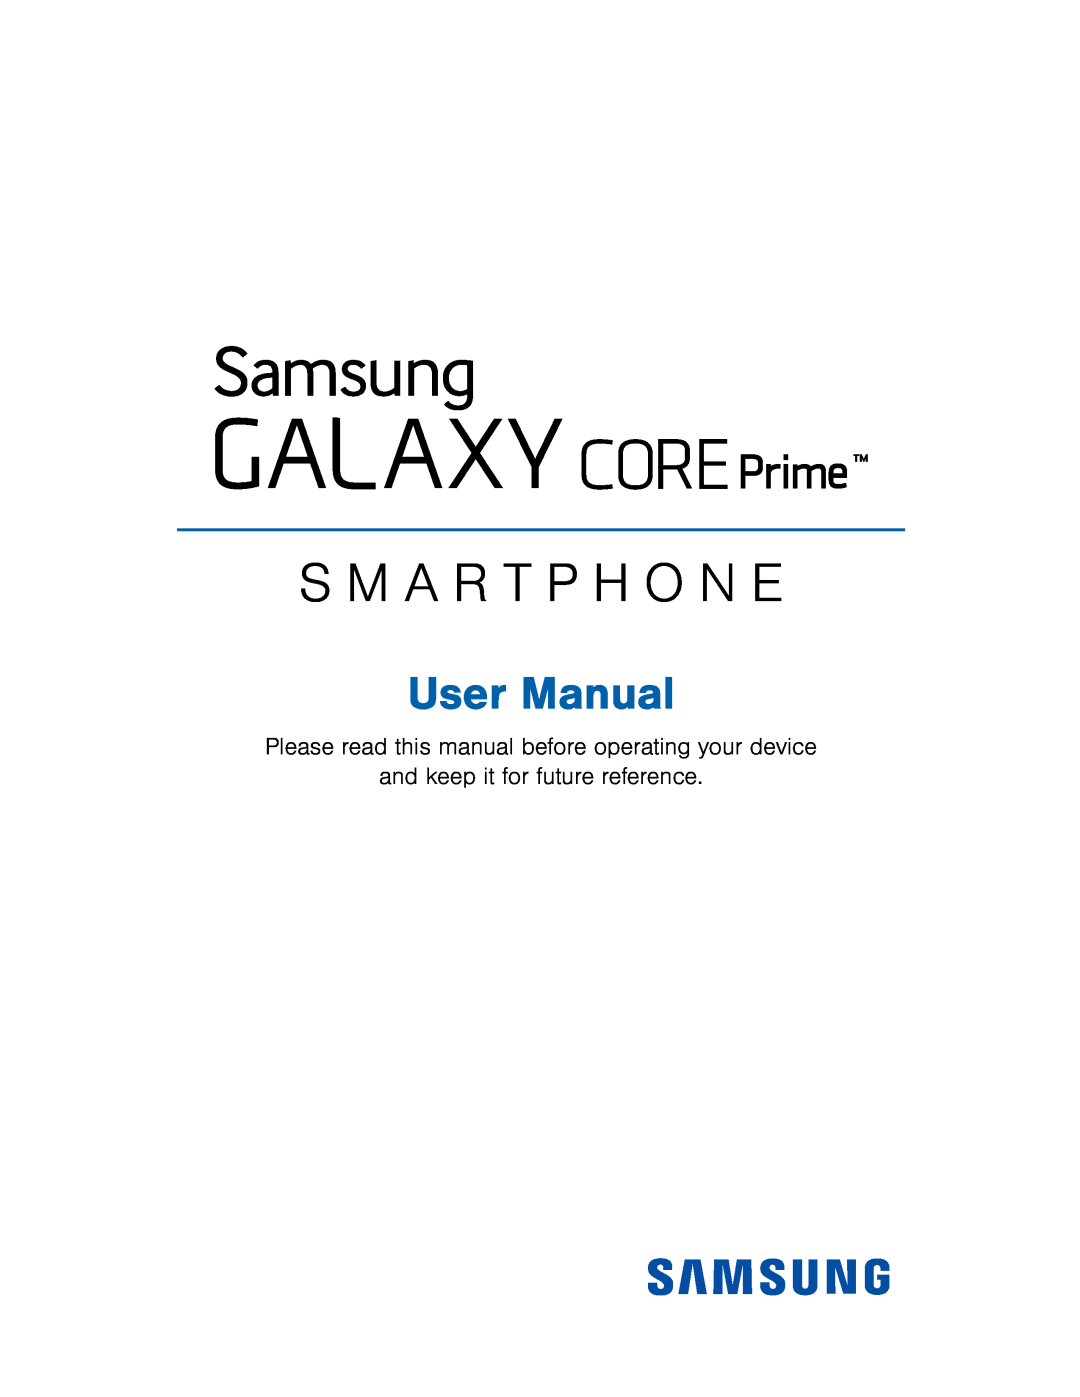 Galaxy Core Prime T-Mobile